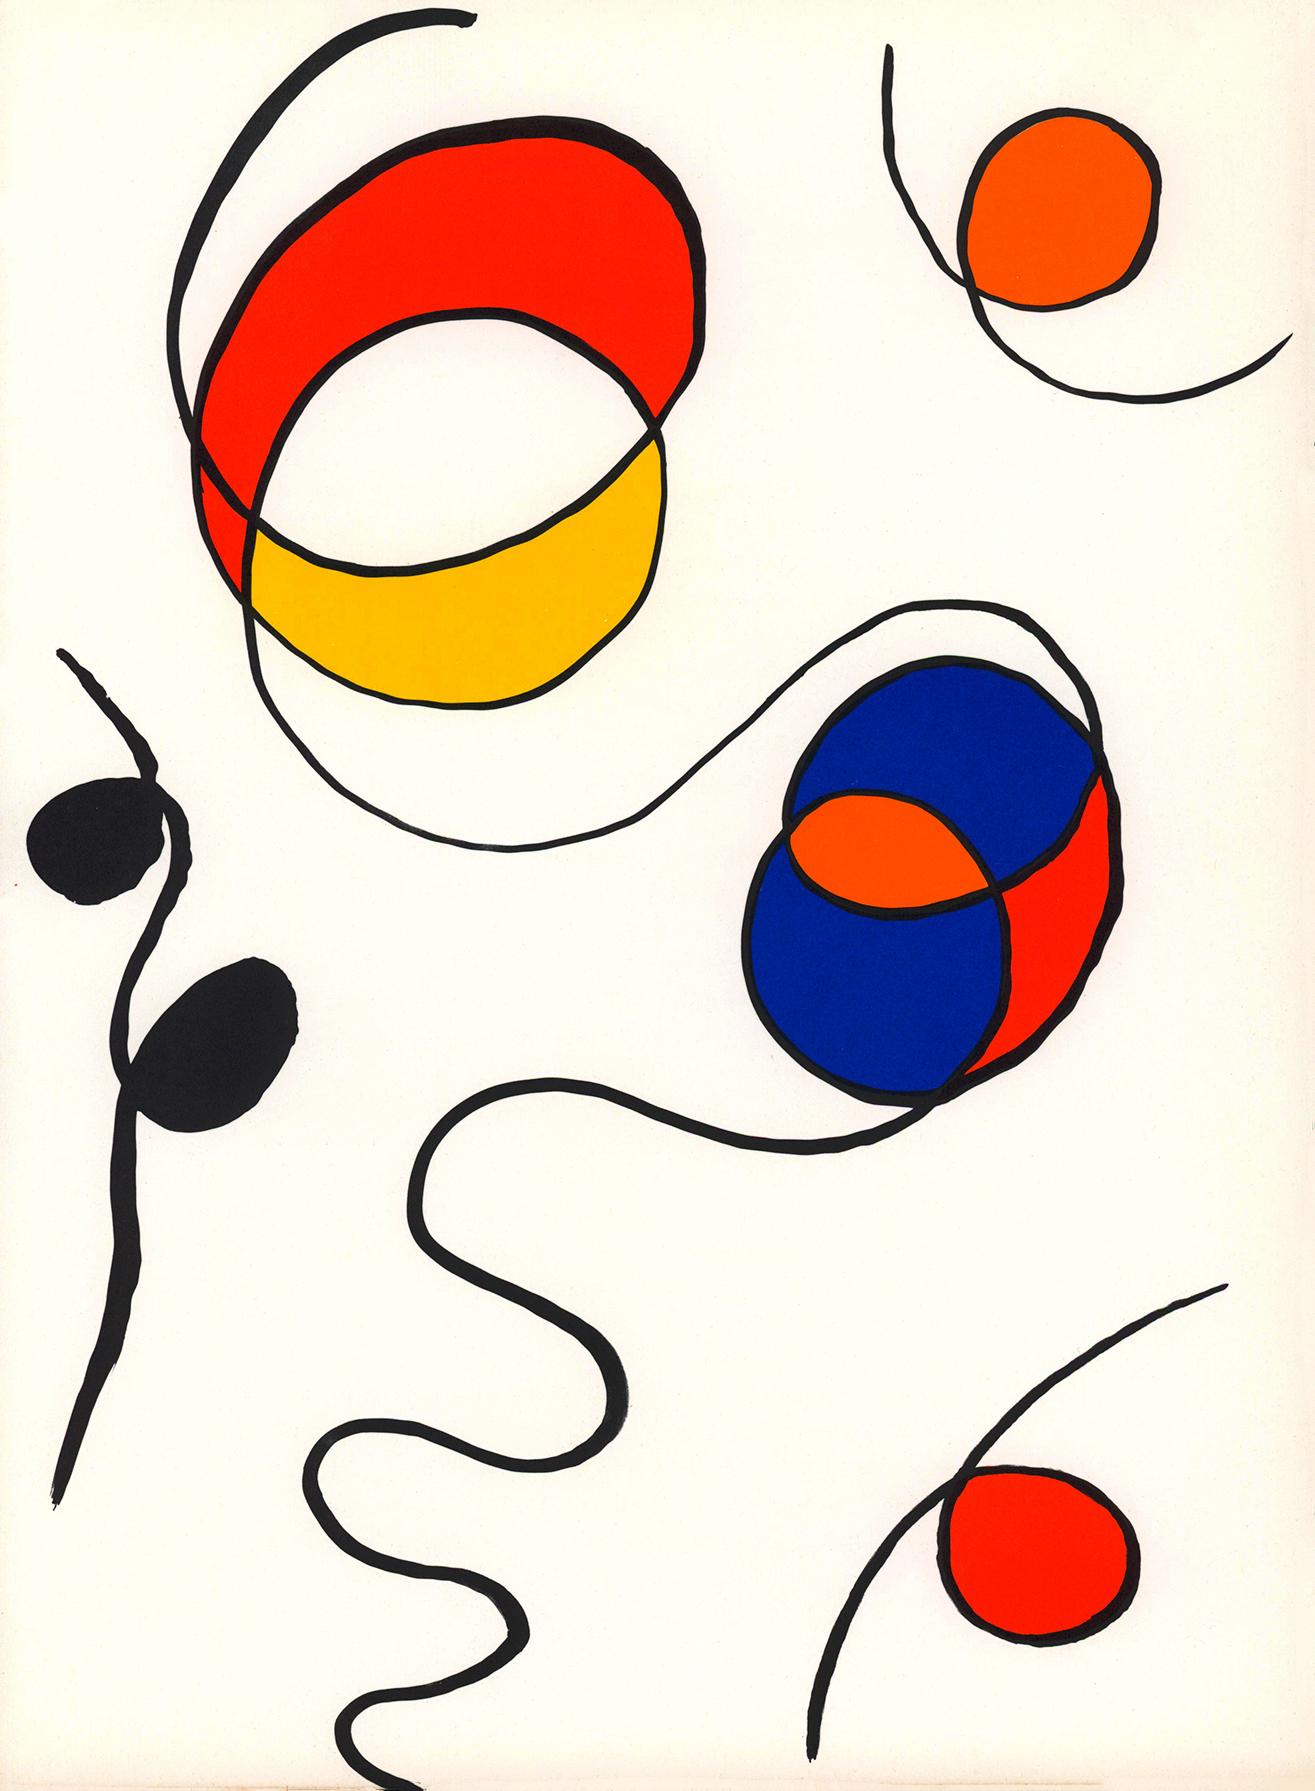 Alexander Calder Lithographie c. 1967 de Derrière le miroir :

Lithographie en couleurs ; 15 x 11 pouces.
Très bon état général ; bien entretenu. 
Non signé d'une édition d'inconnus.
De : Derrière le miroir Imprimé en France vers 1967. 

Derrière le